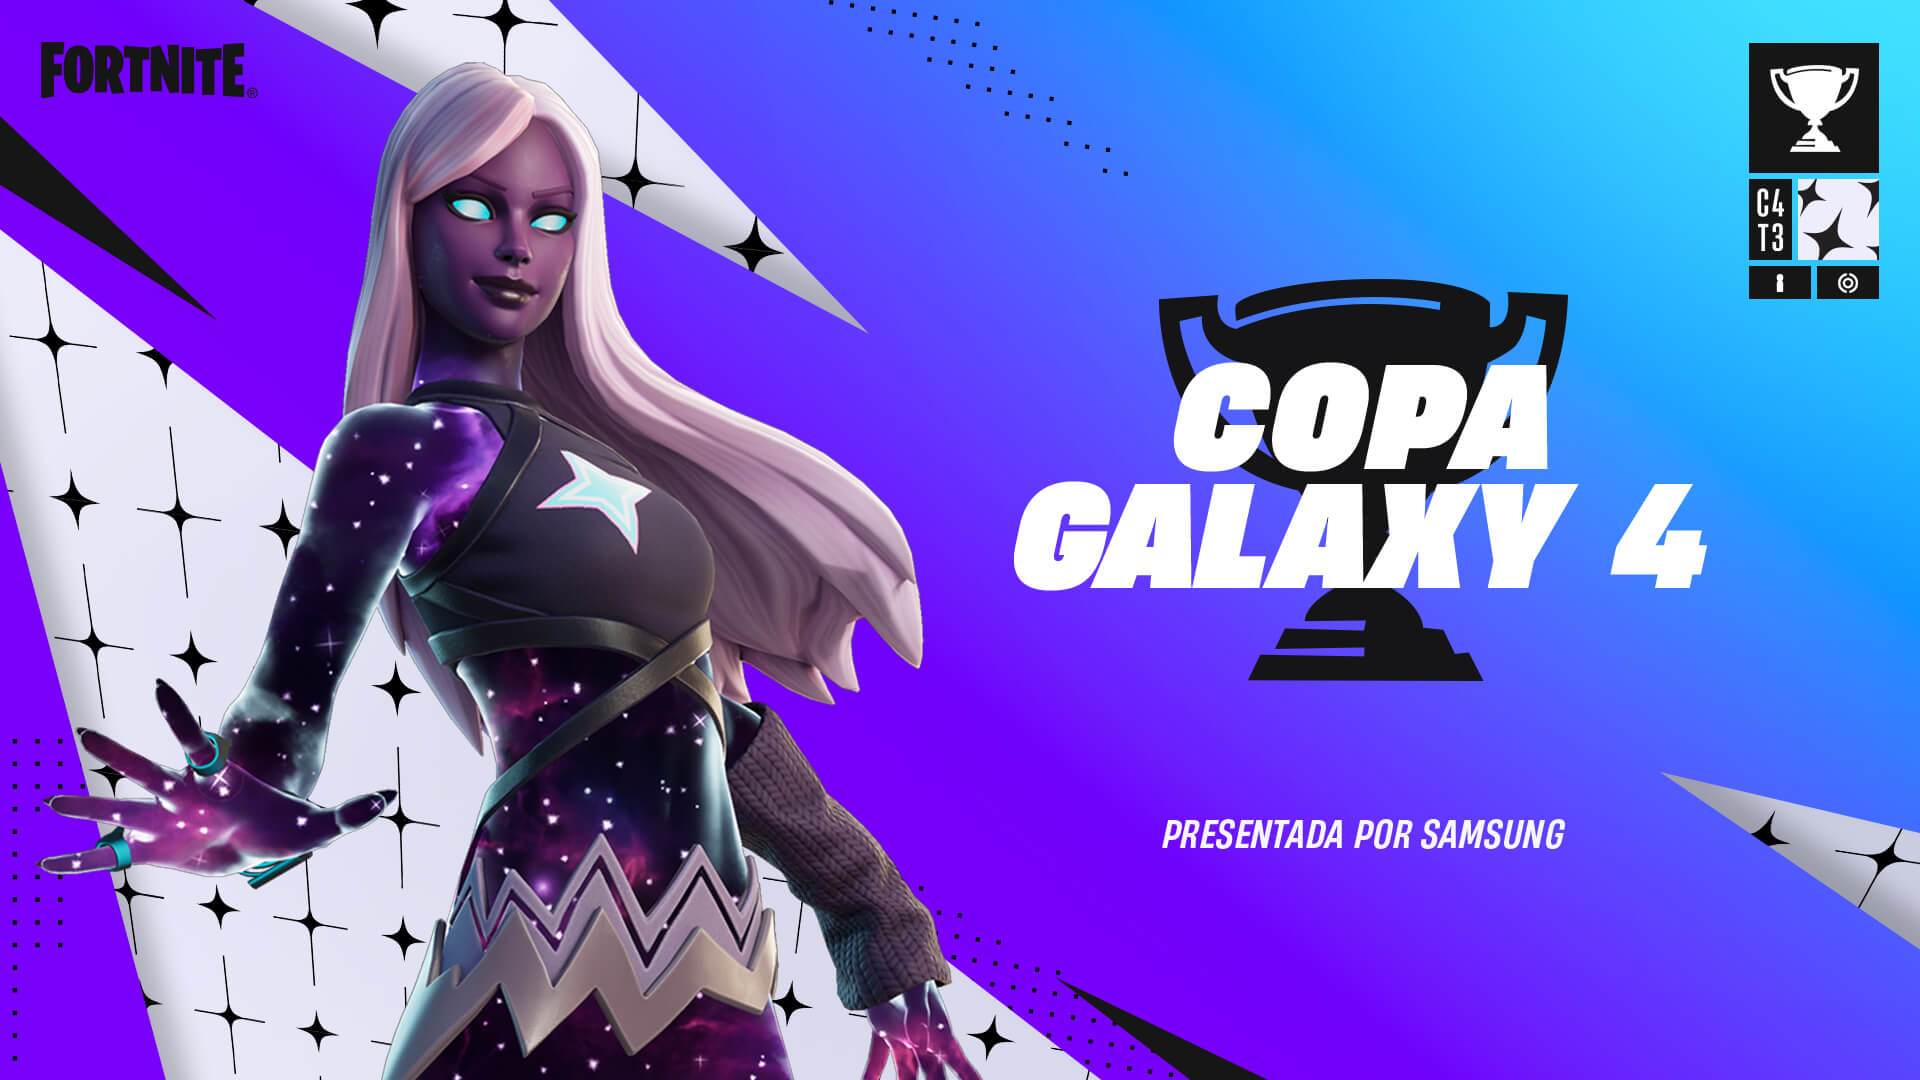 ¡Prepárate! El 29 y 30 de julio se llevará a cabo la Copa Galaxy 4 de Fortnite